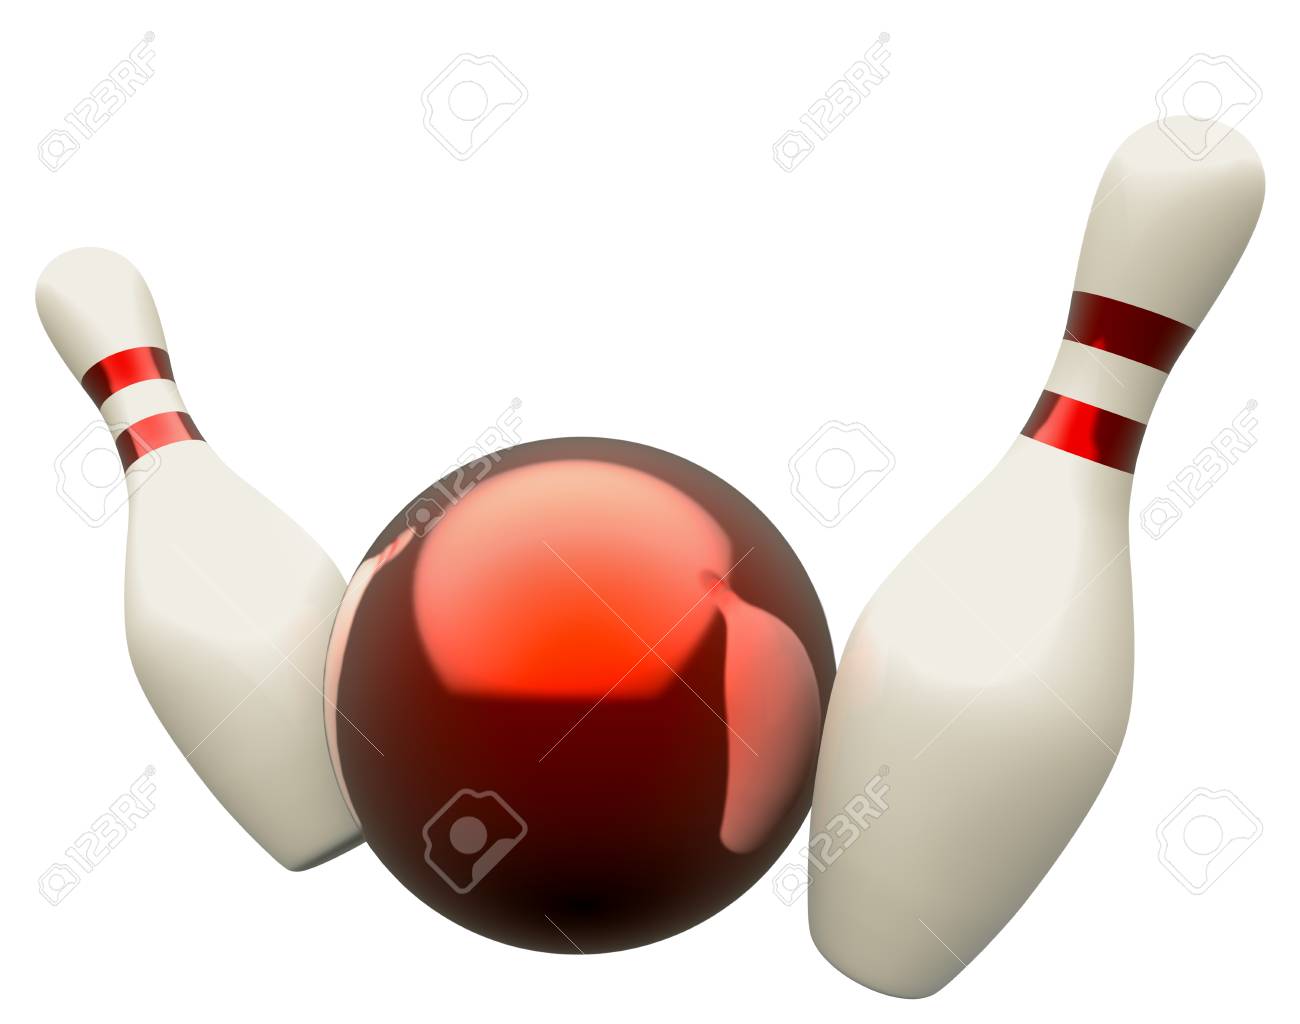 29842578-bowling-kugel-und-kegel-auf-weißem-hintergrund.jpg  